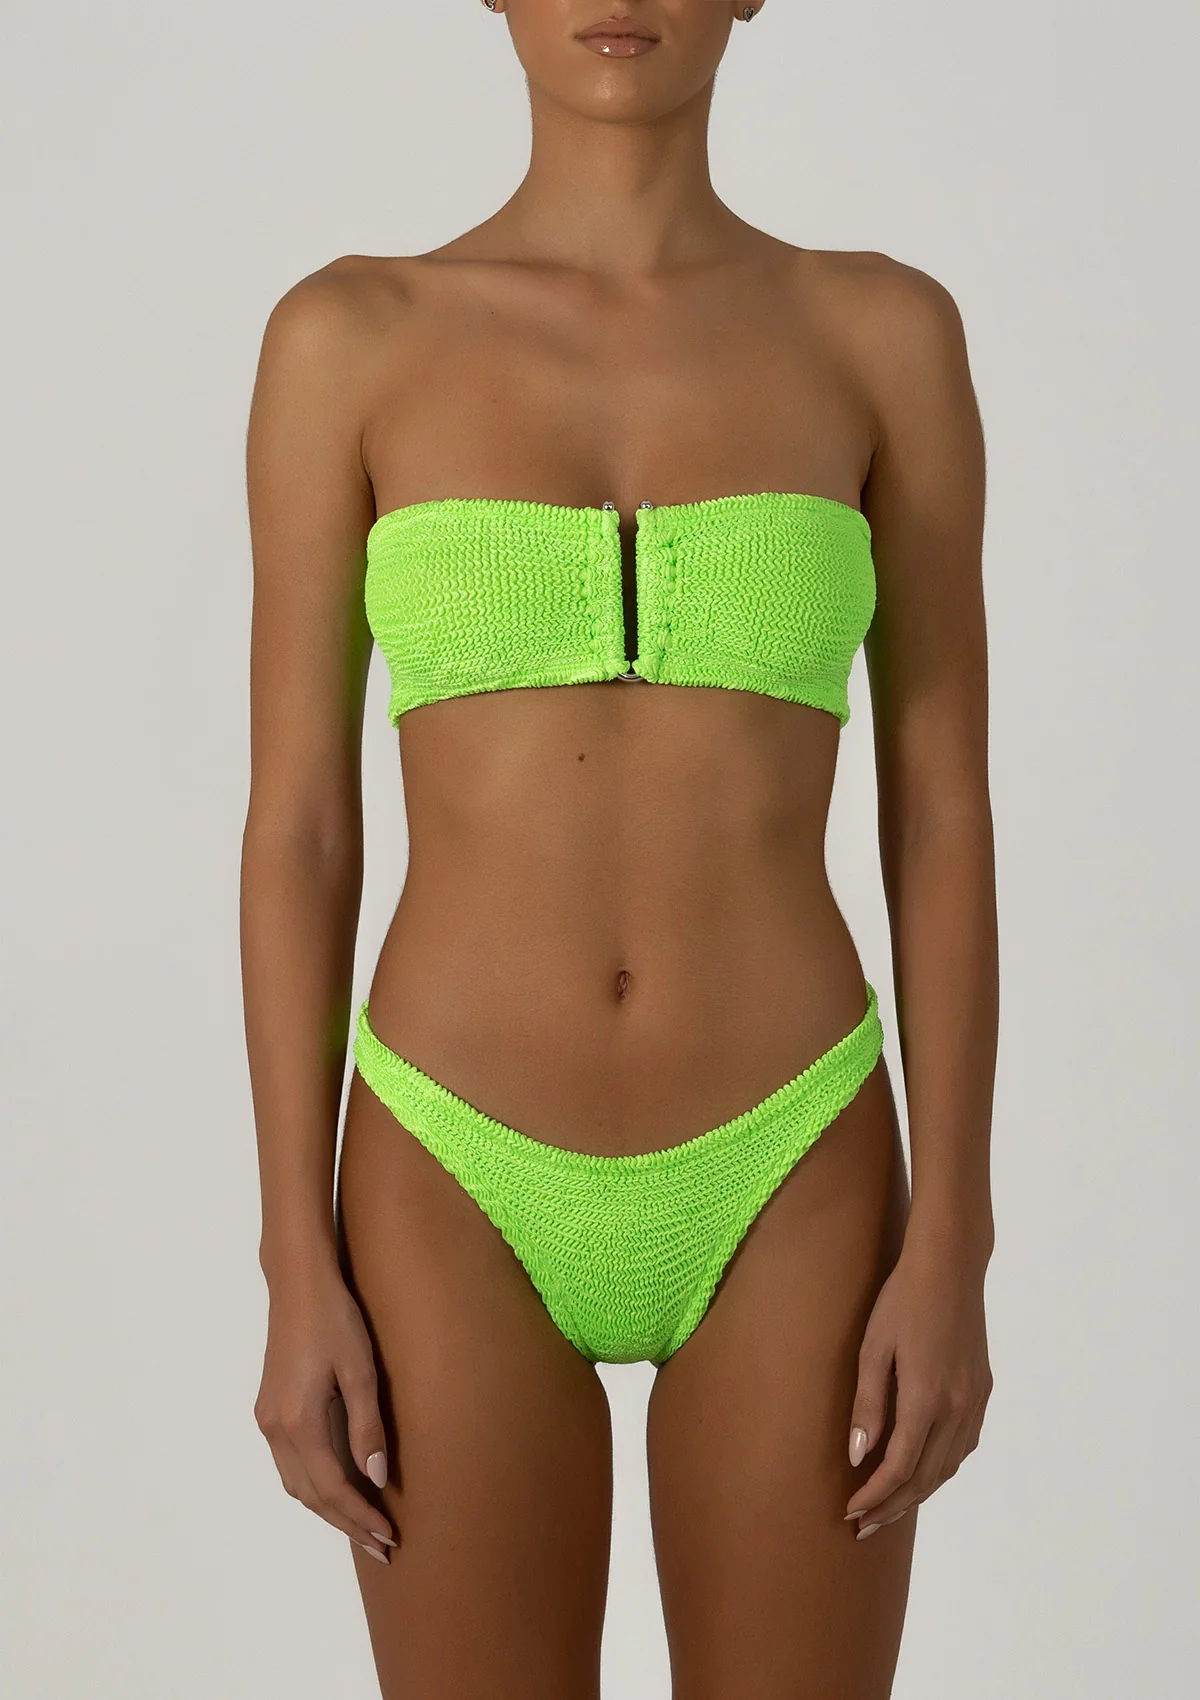 Paramidonna Strapless Bikini Neon Green